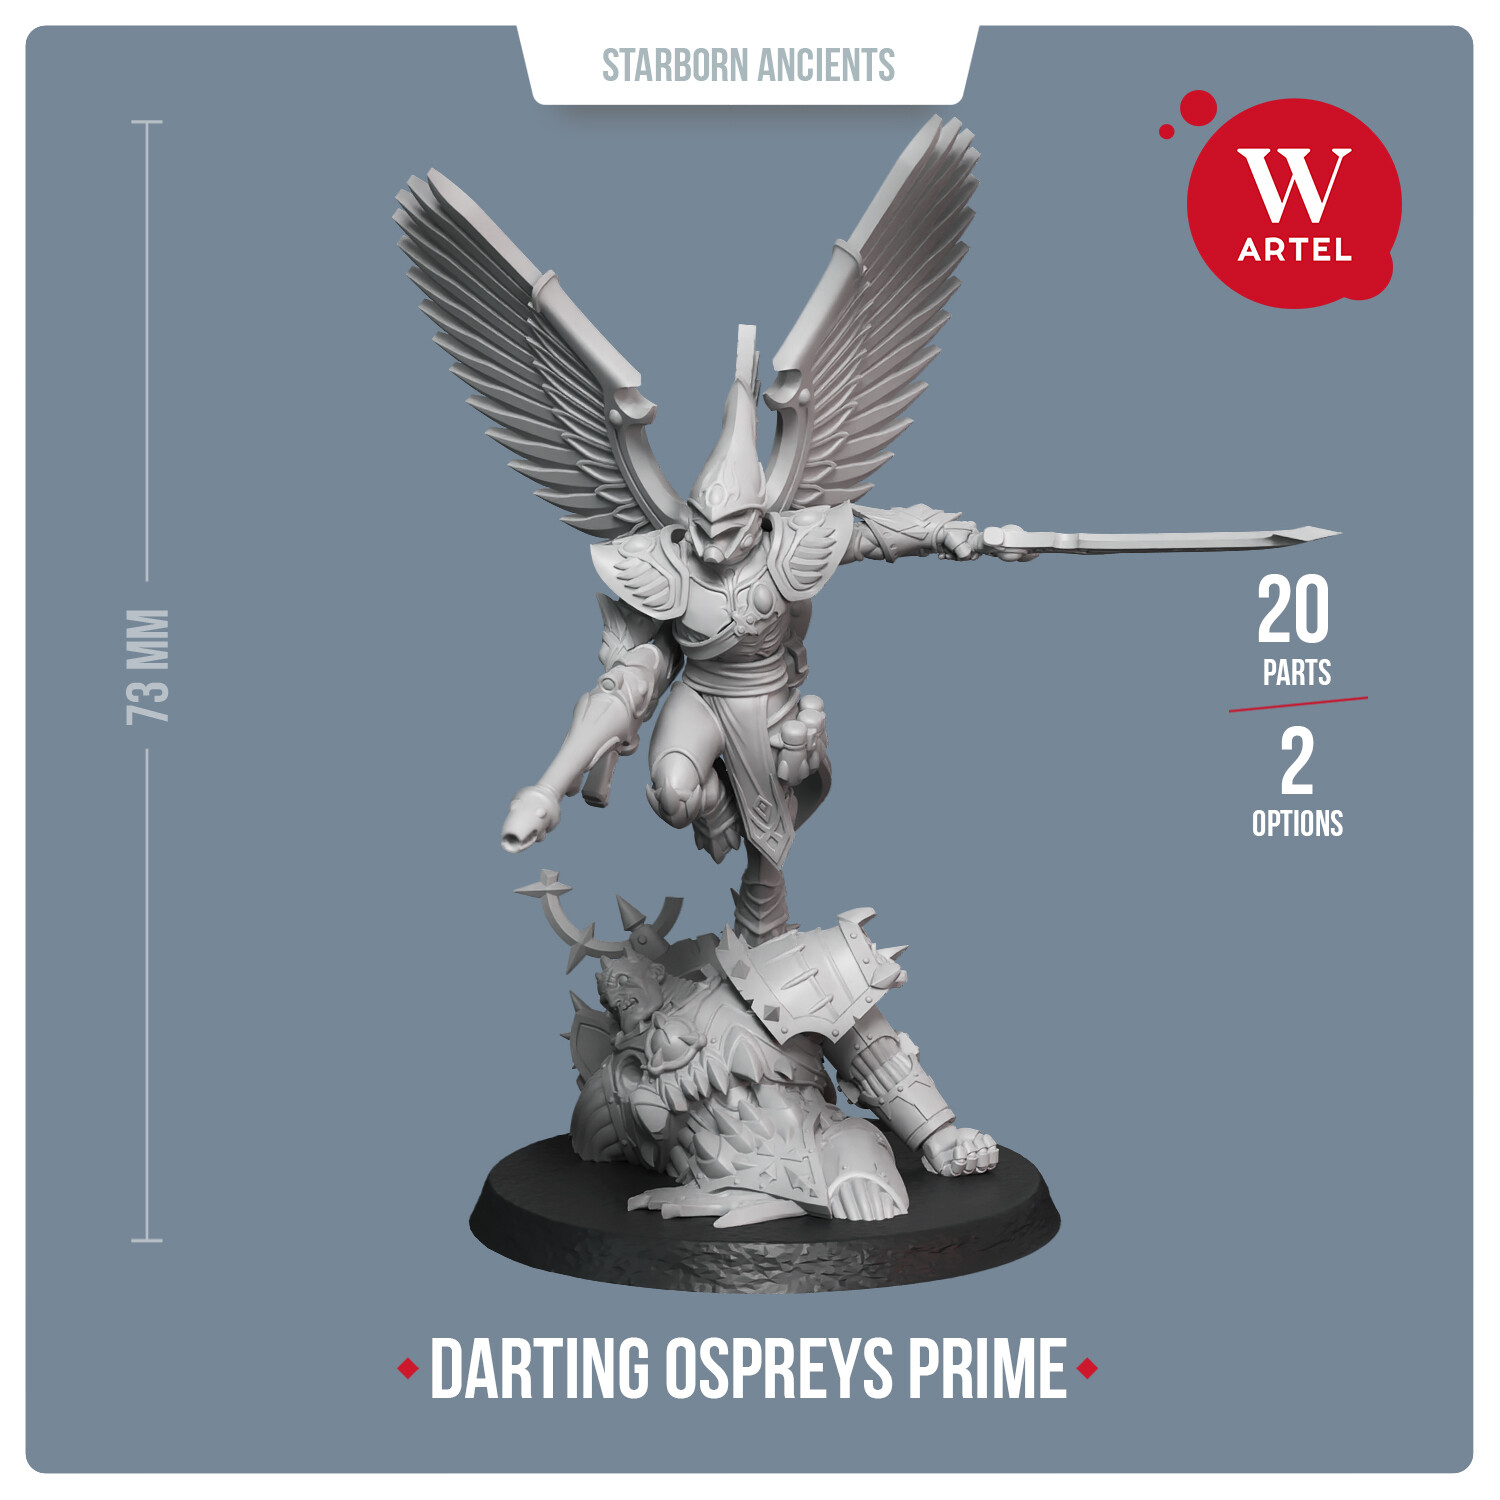 Darting Ospreys Prime